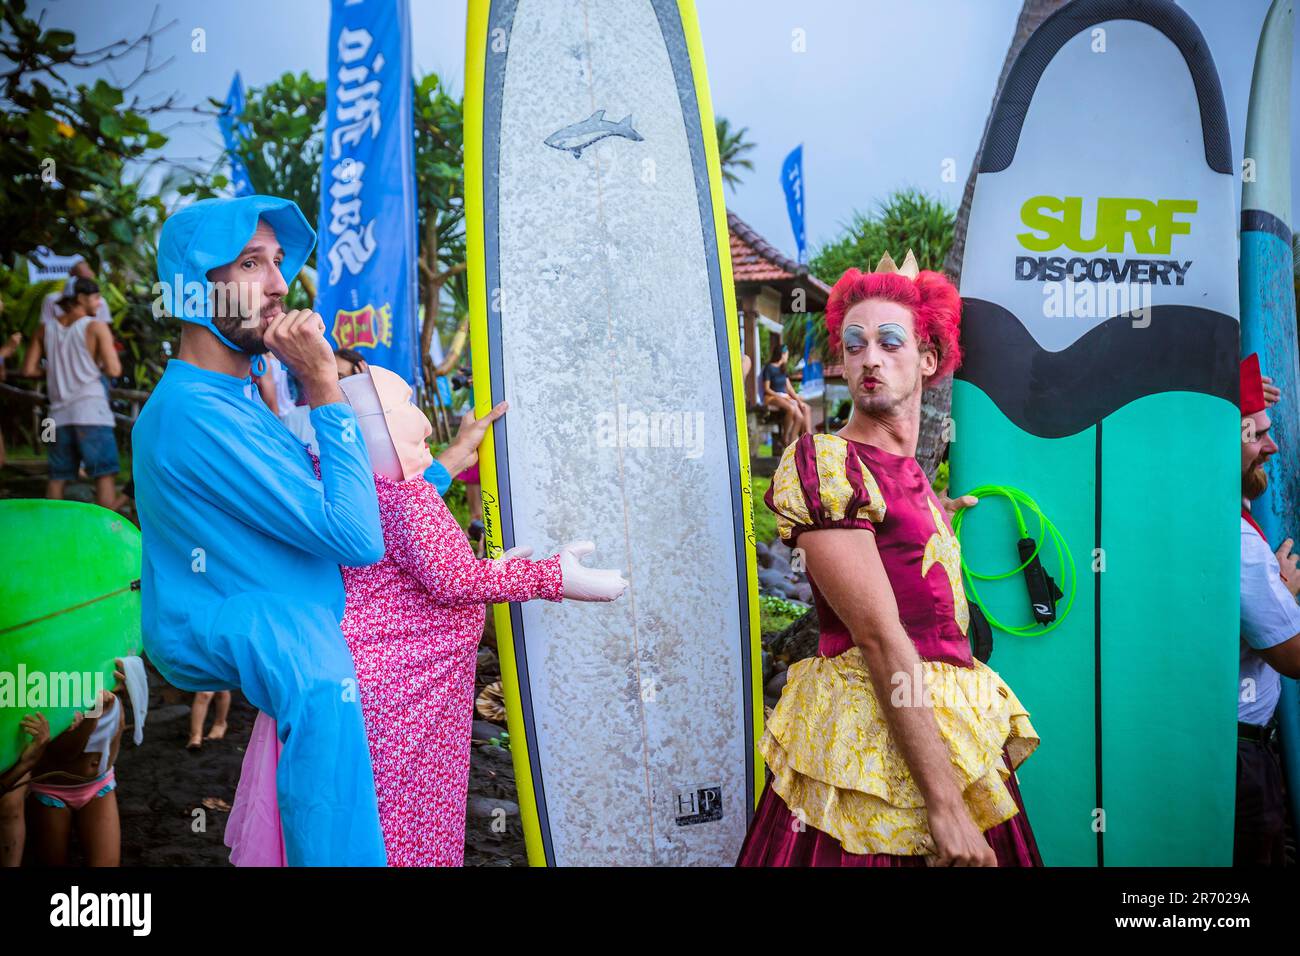 Surfen in Karnevalskostümen, Bali, Indonesien. Stockfoto